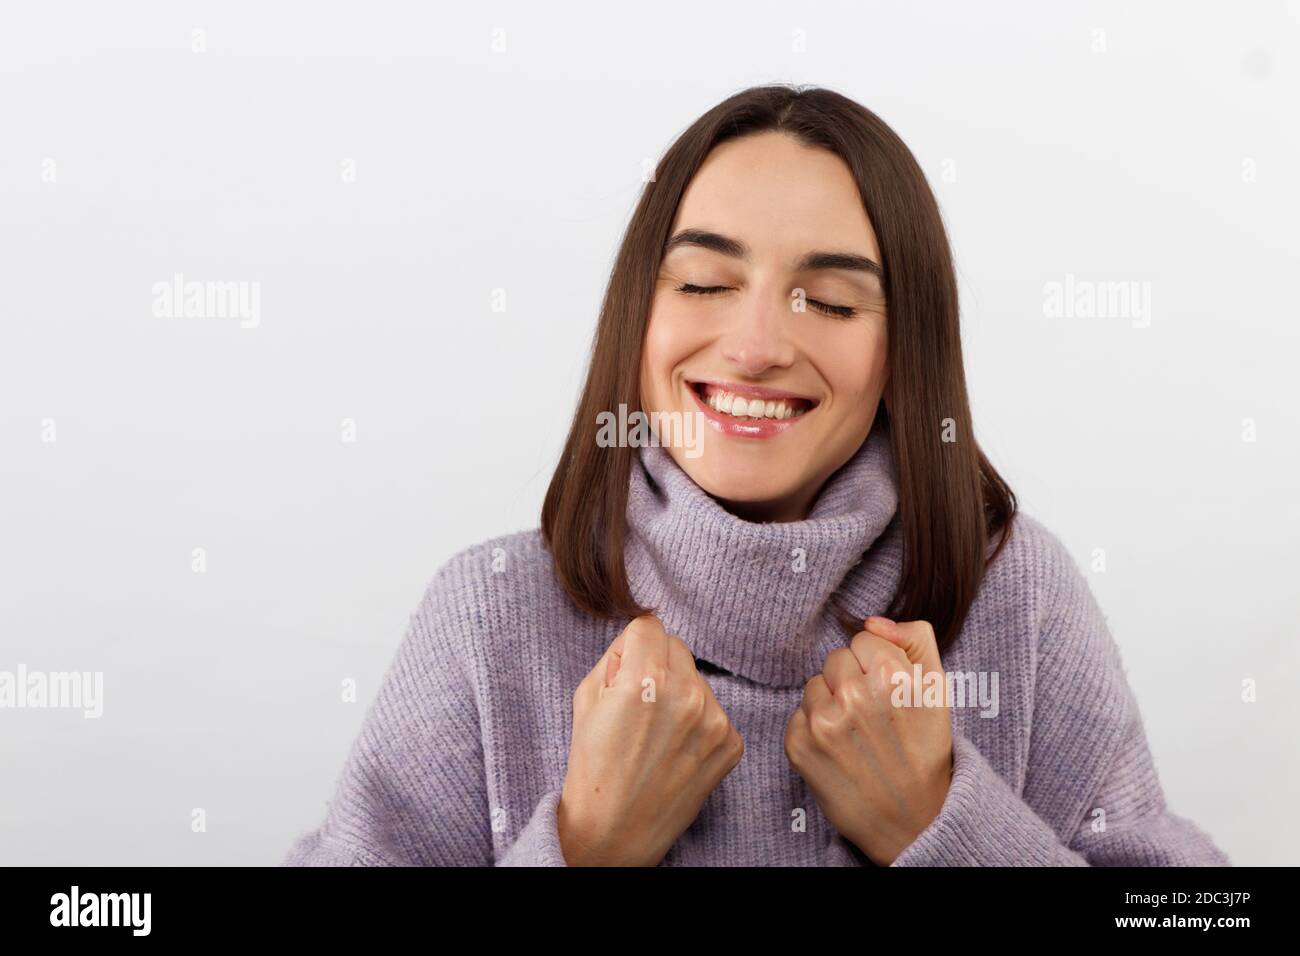 Gros plan séduisant une femme brune souriante dans un chandail pourpre à la recherche d'un événement passionnant, sourire joyeusement exprimer la positivité Banque D'Images